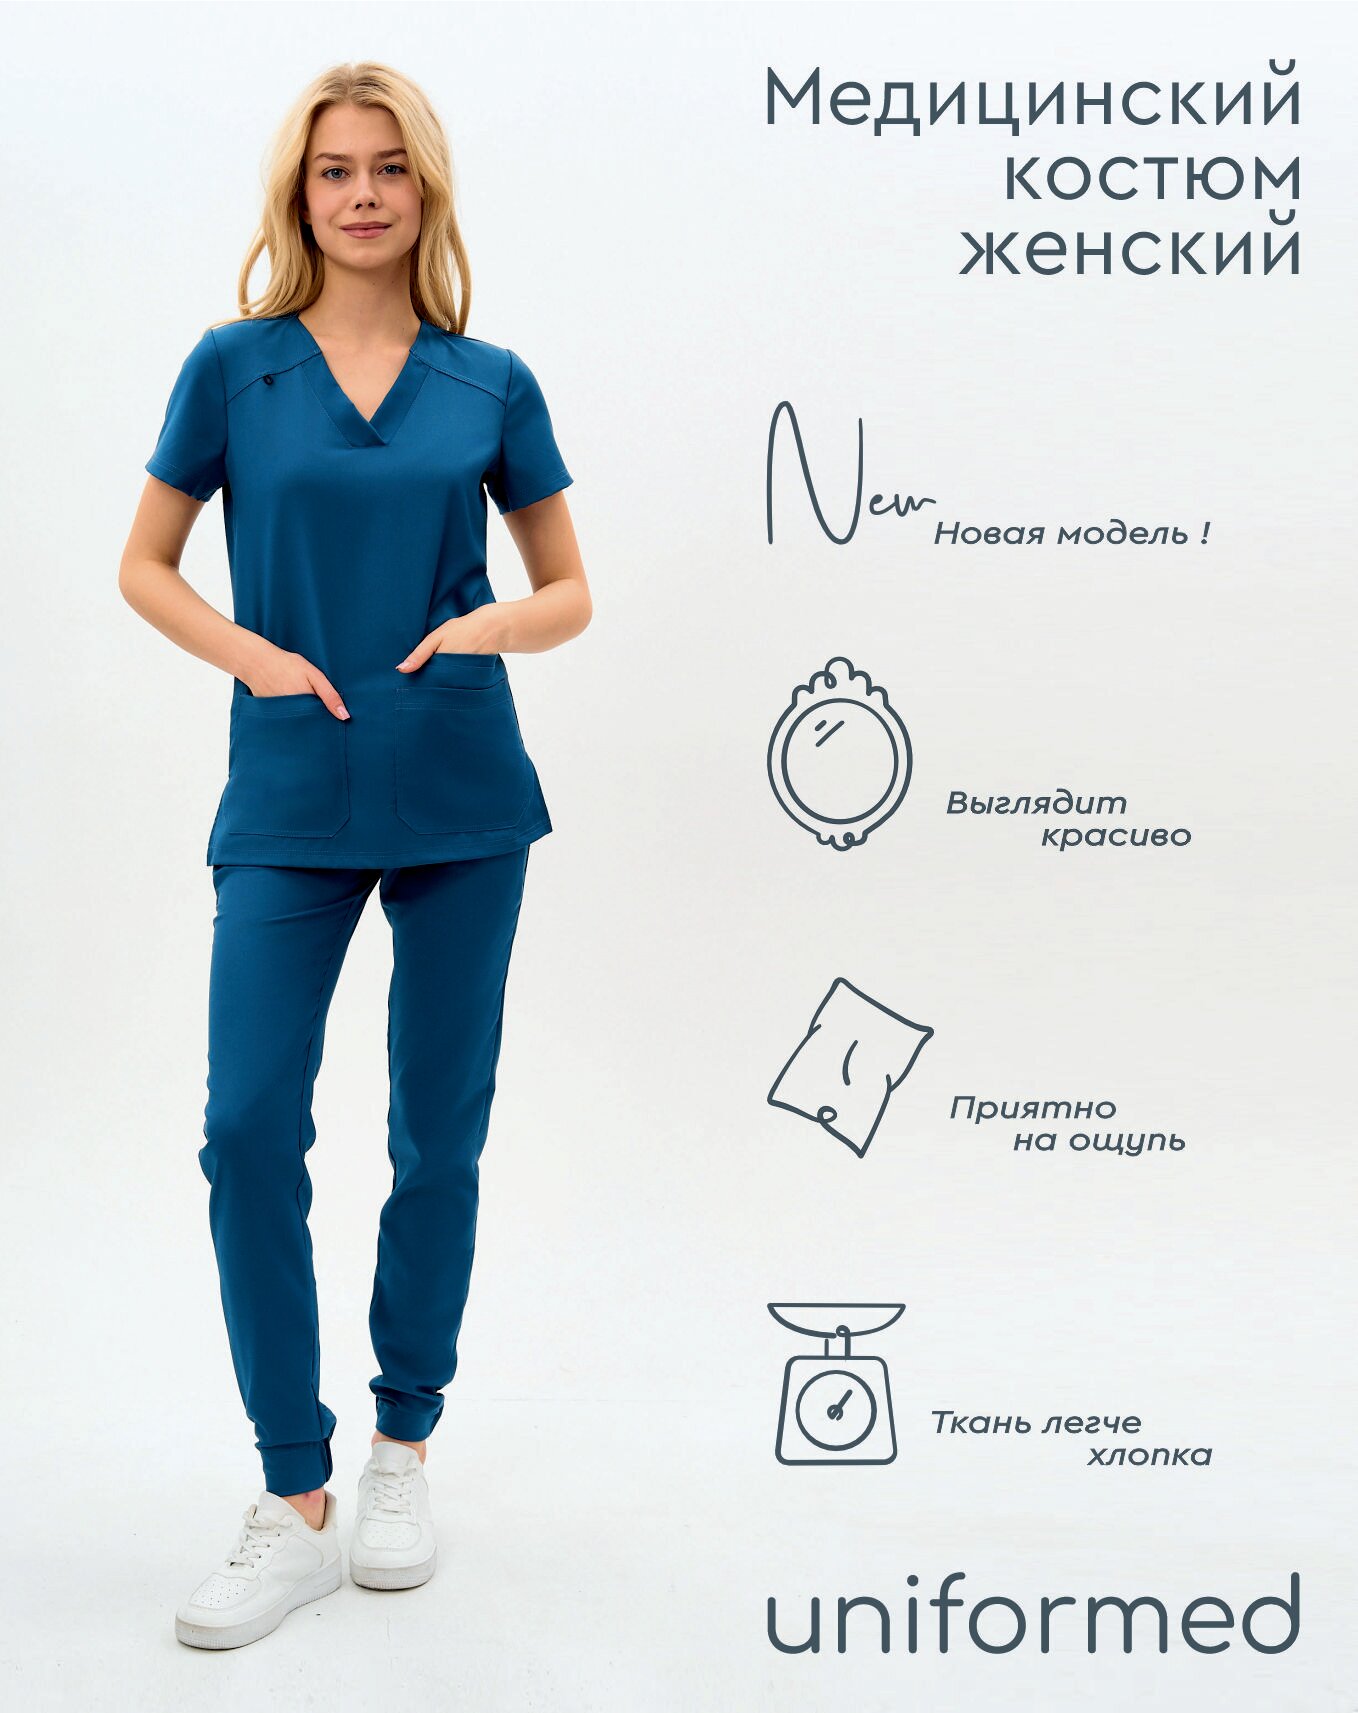 Медицинский женский костюм 419.5.5 Uniformed, ткань вискоза стрейч, рукав короткий, цвет синий, отделка черная, размер 54